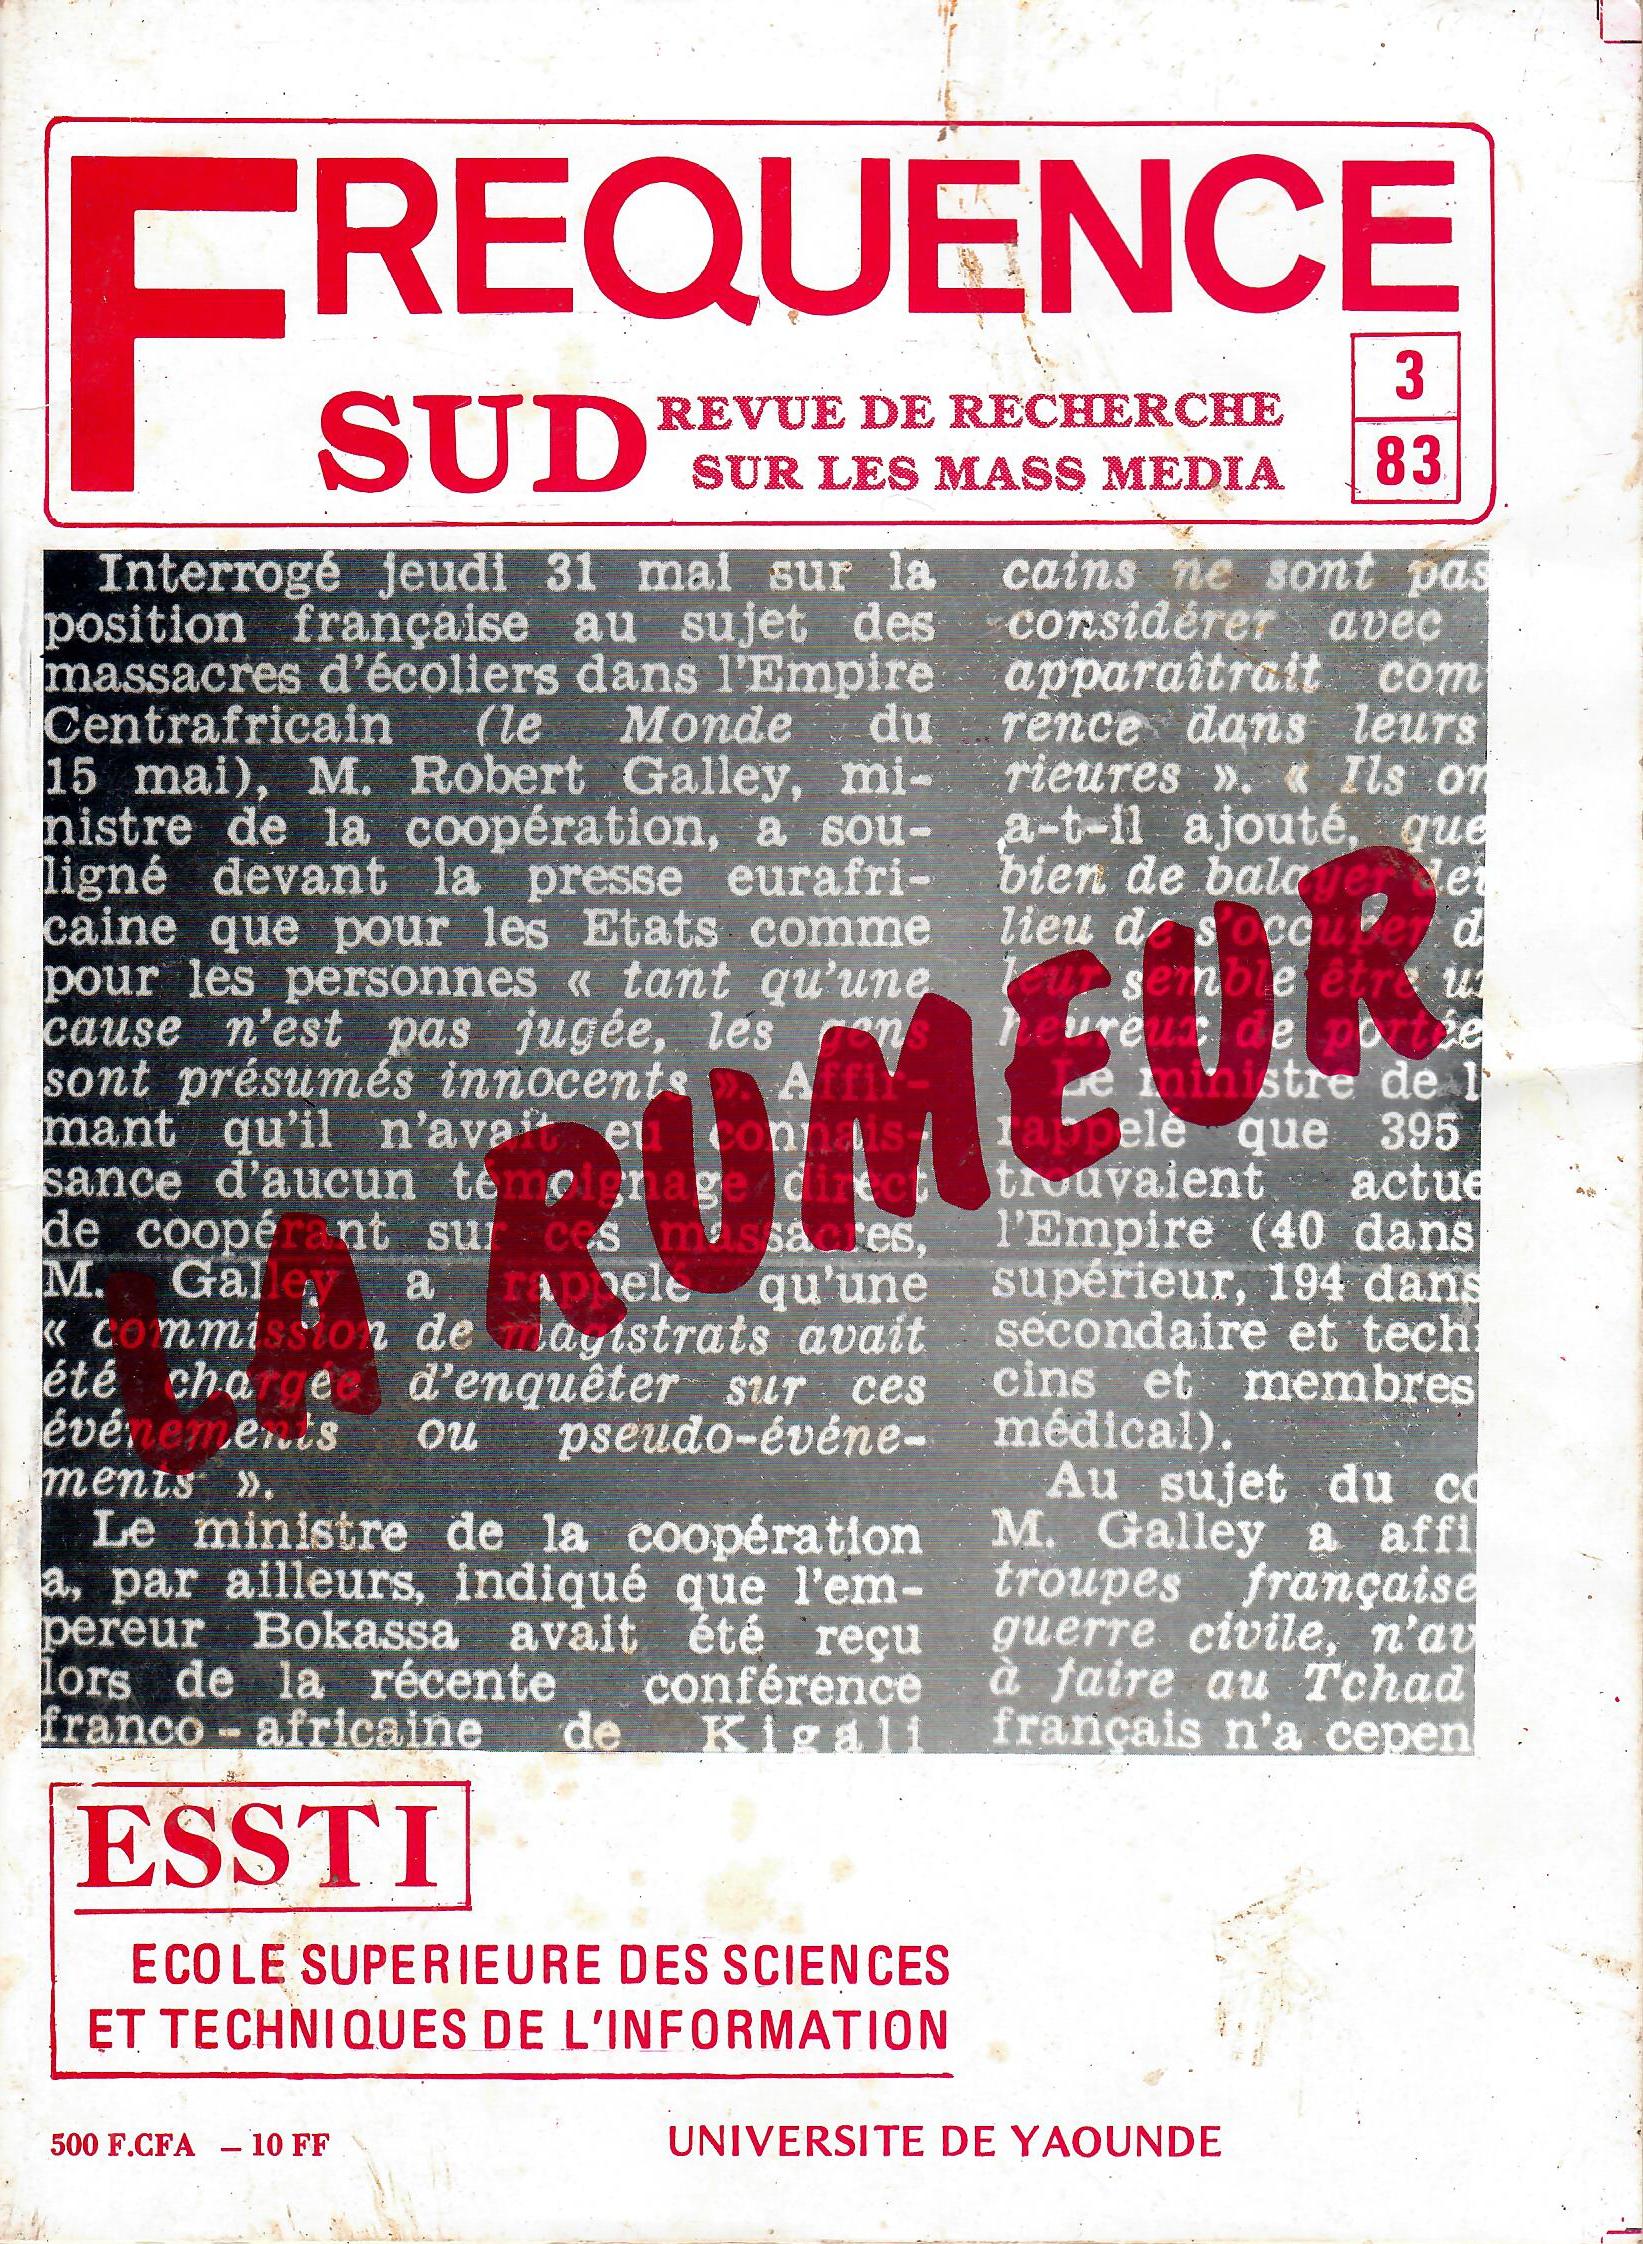 					Afficher No 3 (1983): FREQUENCE SUD (LA RUMEUR)
				